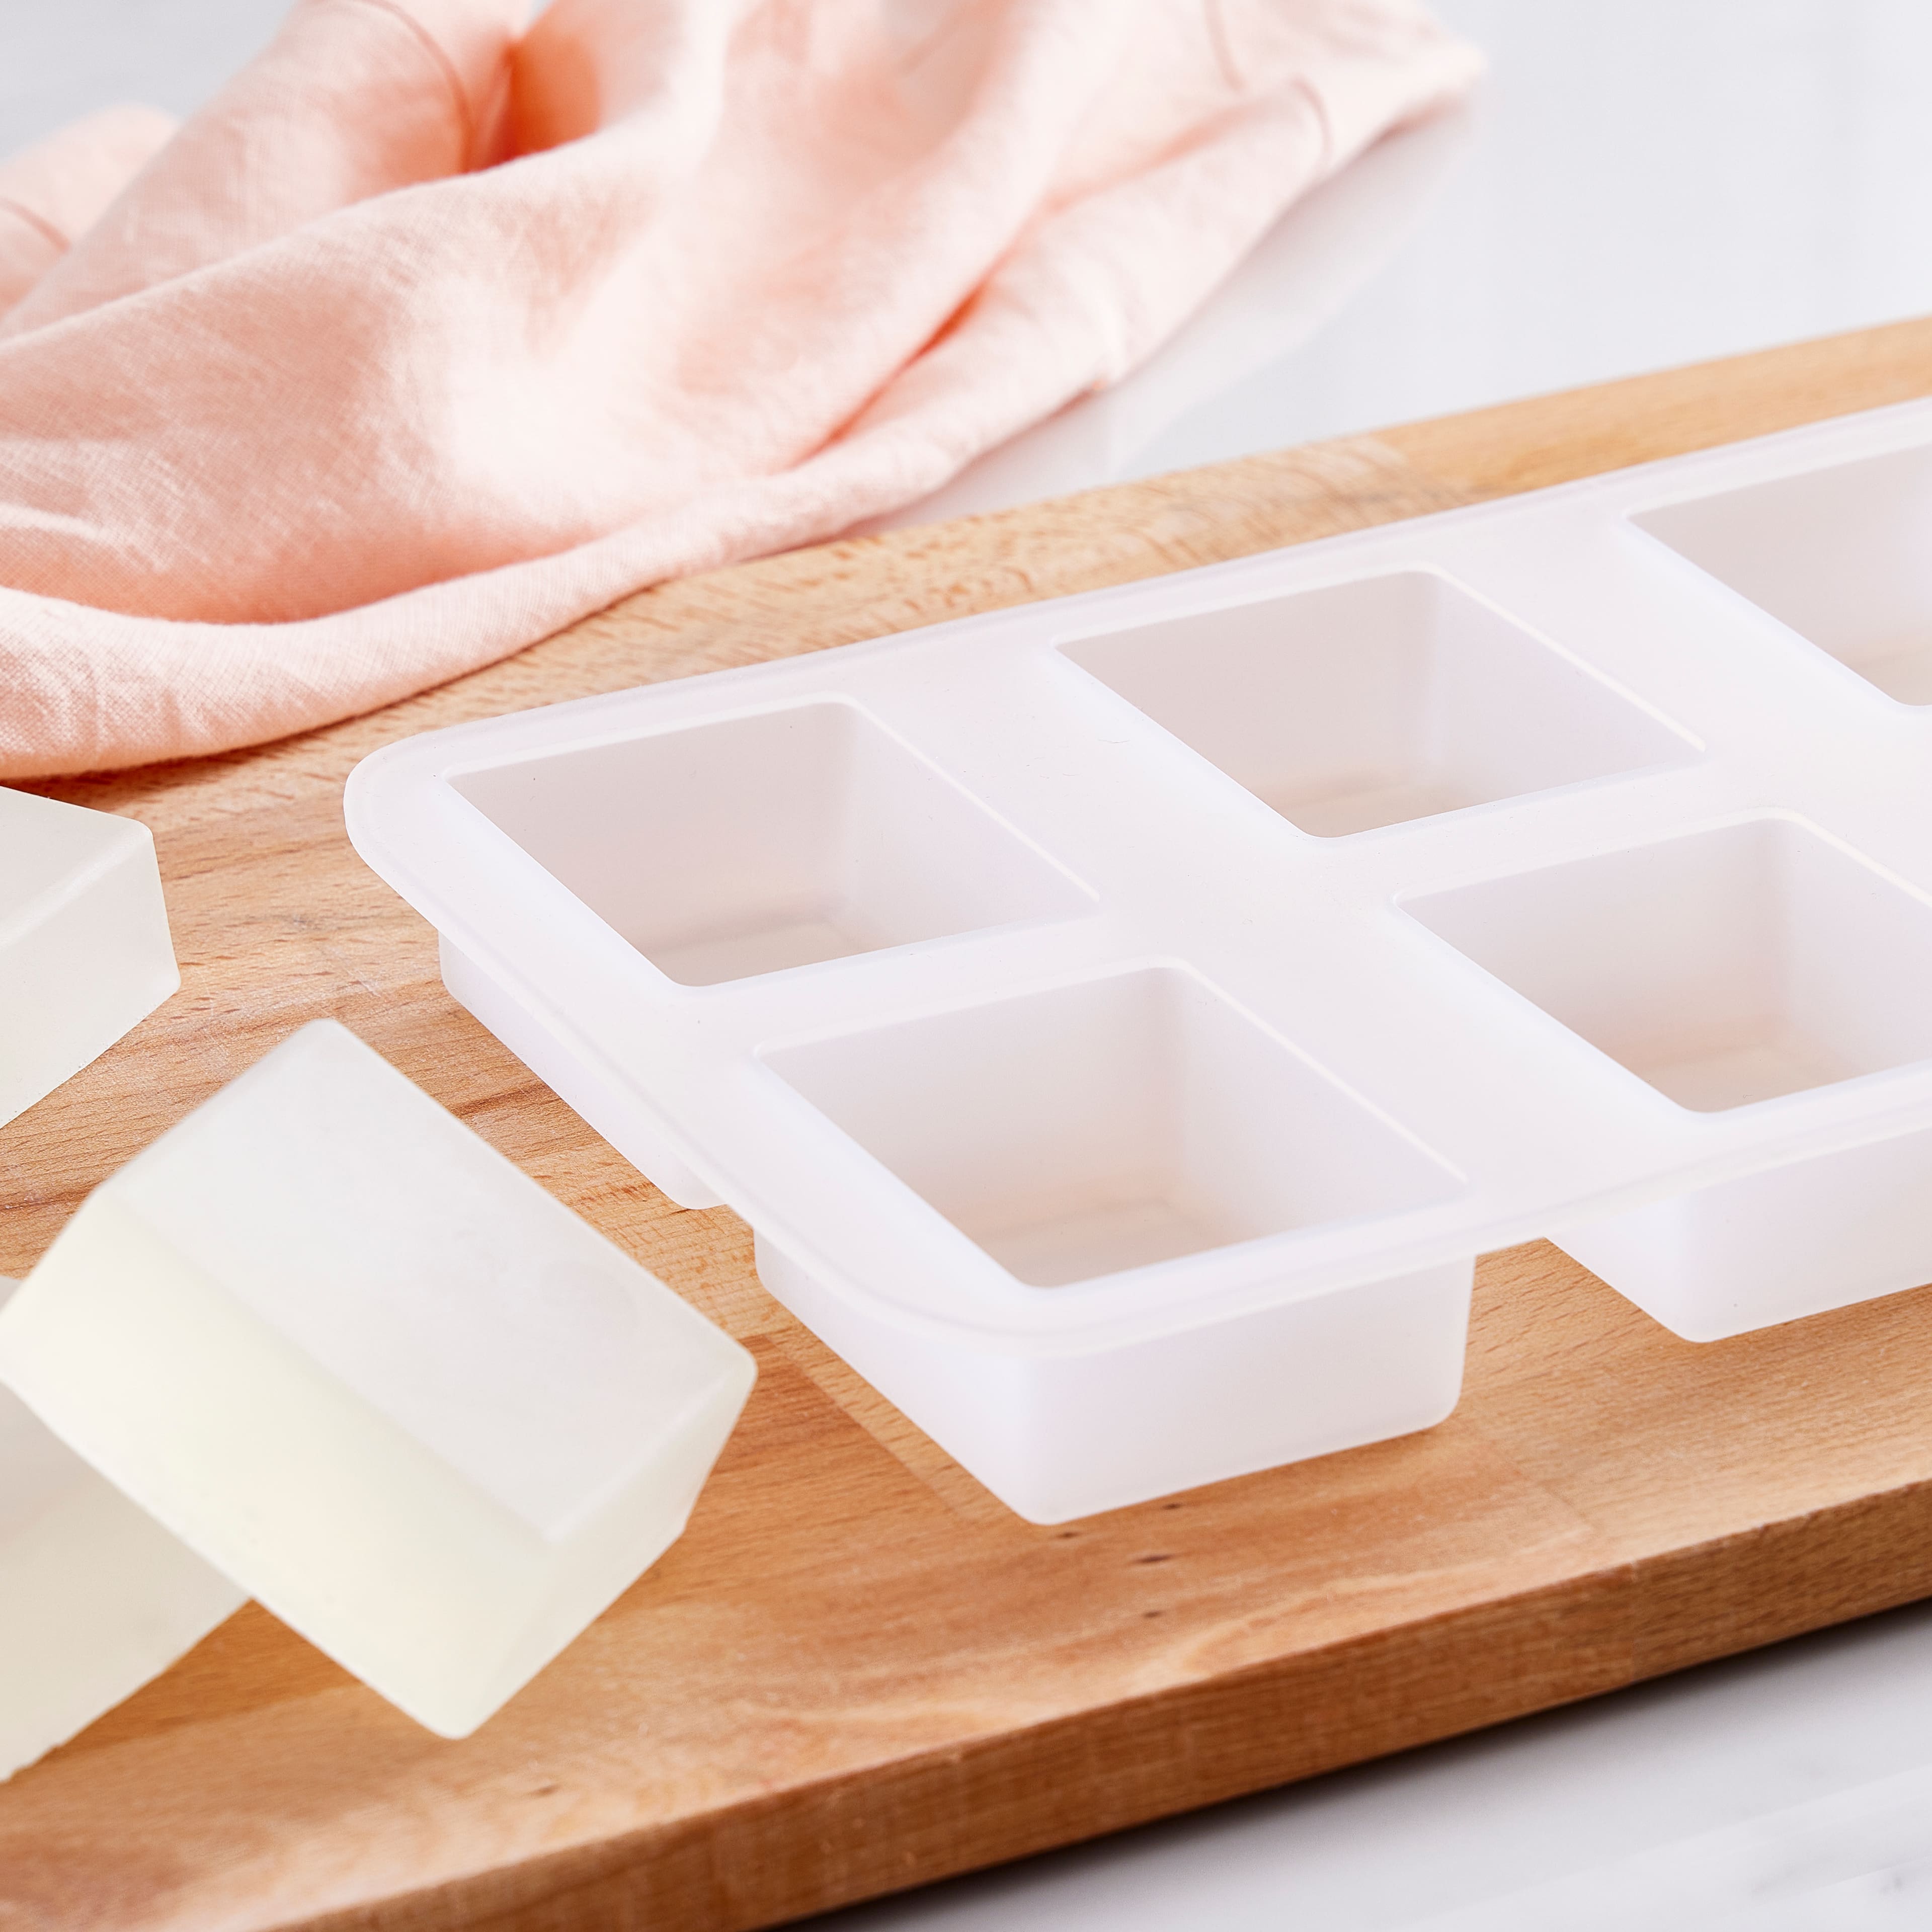 Oatmeal Soap Base, 2lb. by Make Market®